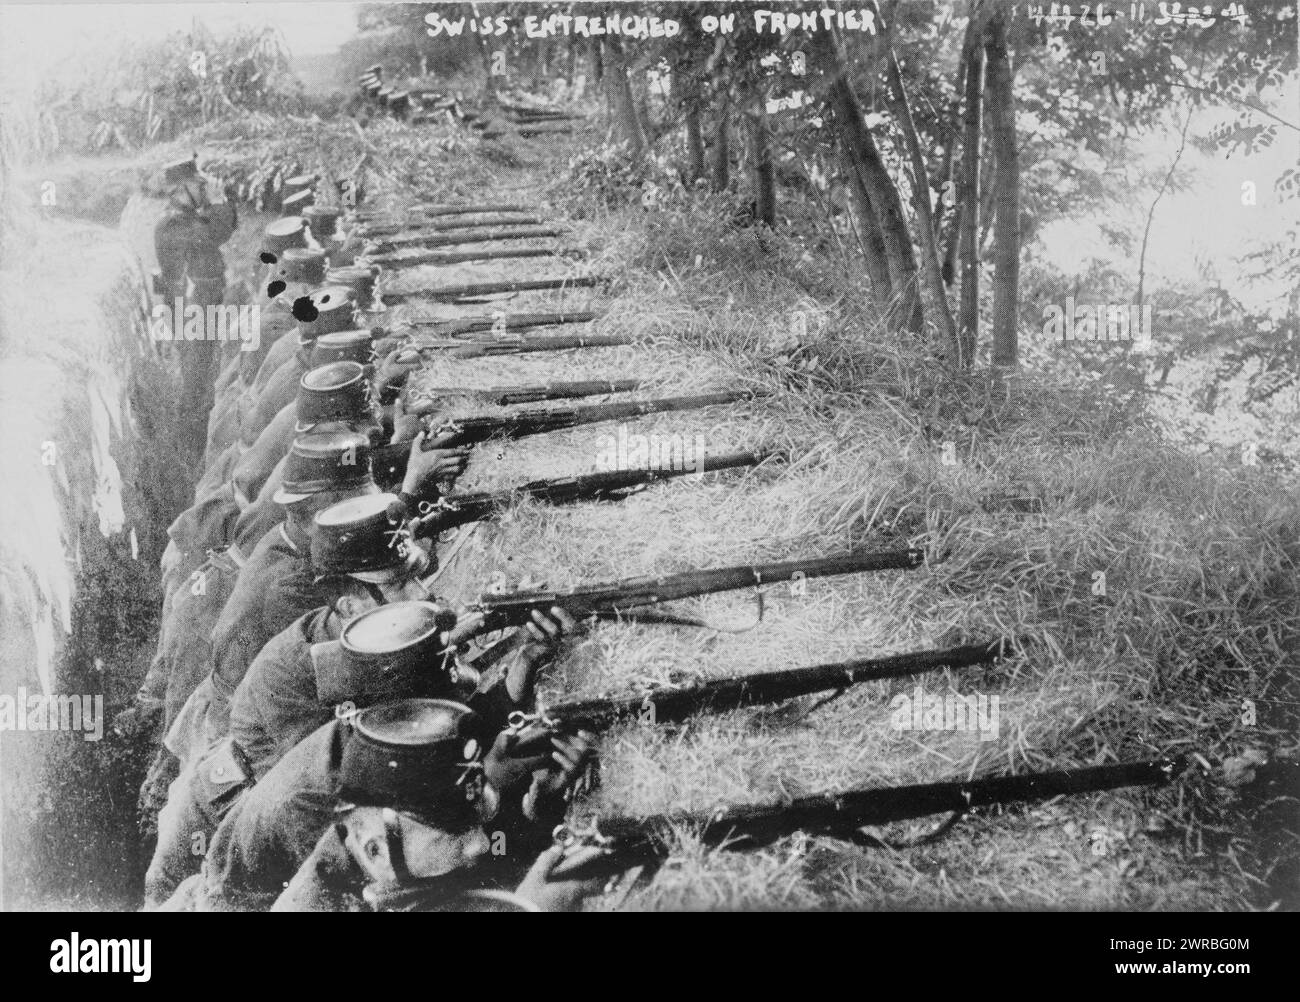 Soldats suisses retranchés à la frontière, entre 1914 et 1916, guerre mondiale, 1914-1918, guerre des tranchées, tirages photographiques, 1910-1920., tirages photographiques, 1910-1920, 1 tirage photographique Banque D'Images